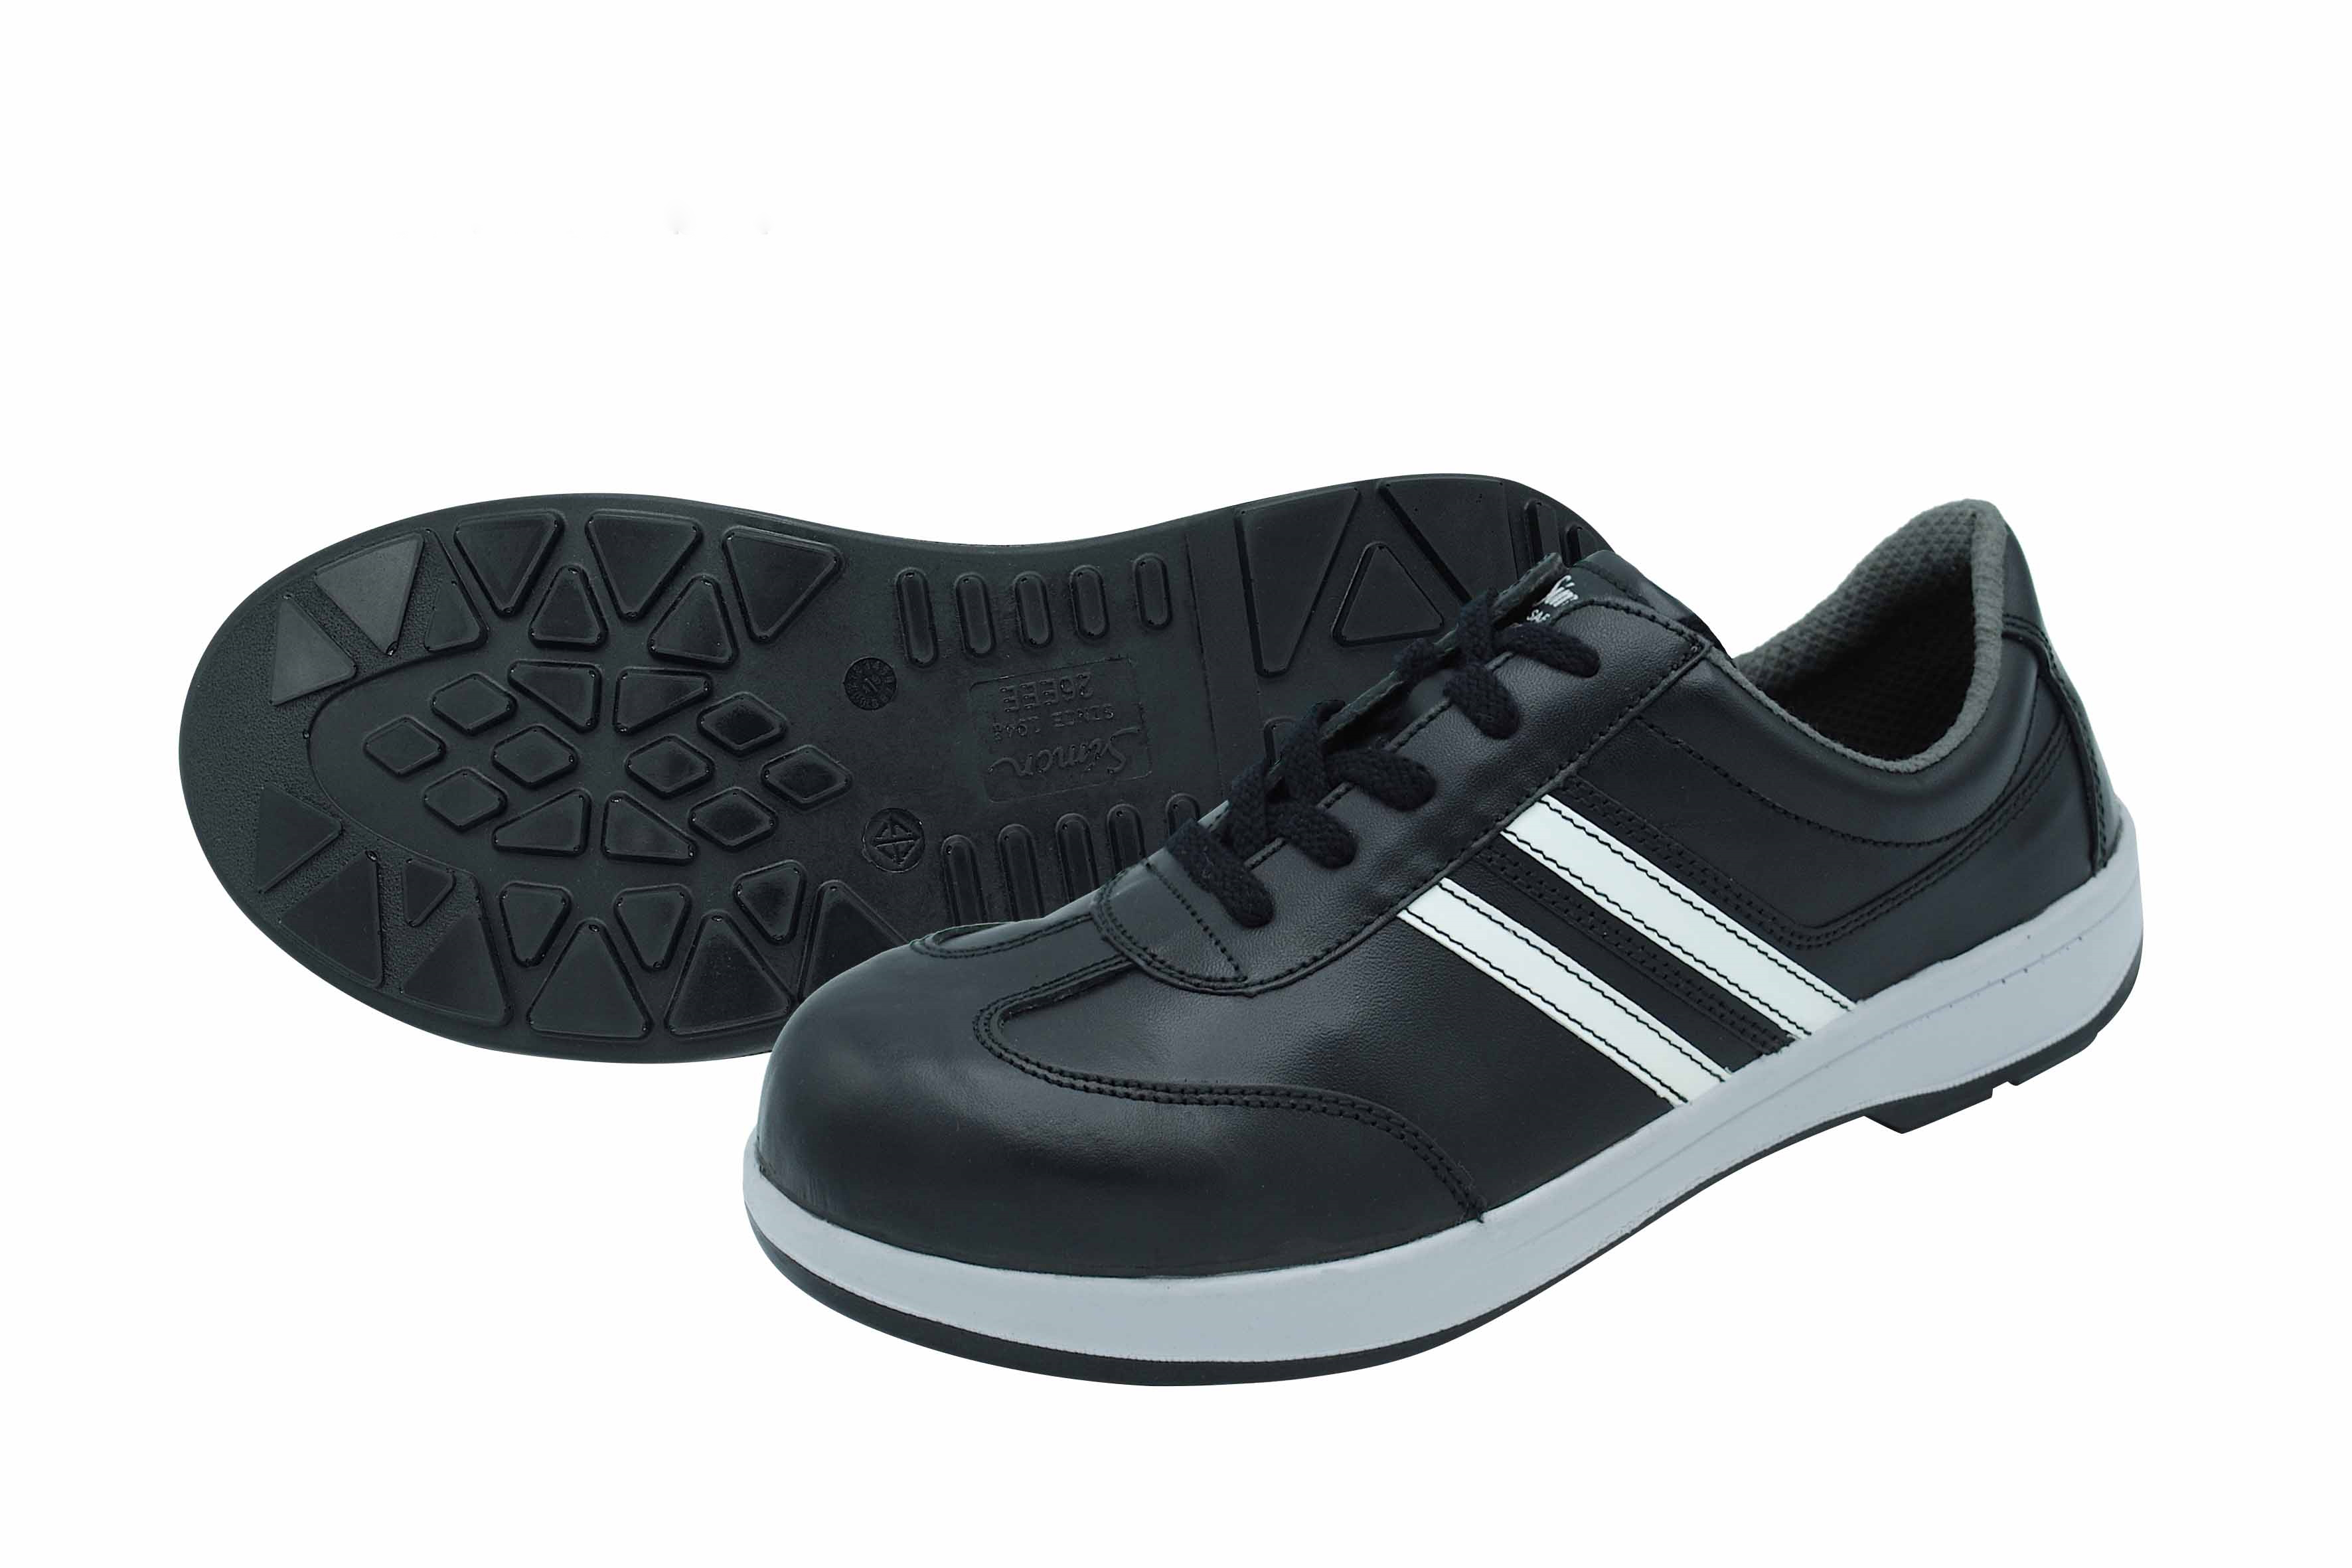 Safety Shoes TSBZ11 Black (TSBZ11-BK-22.0)